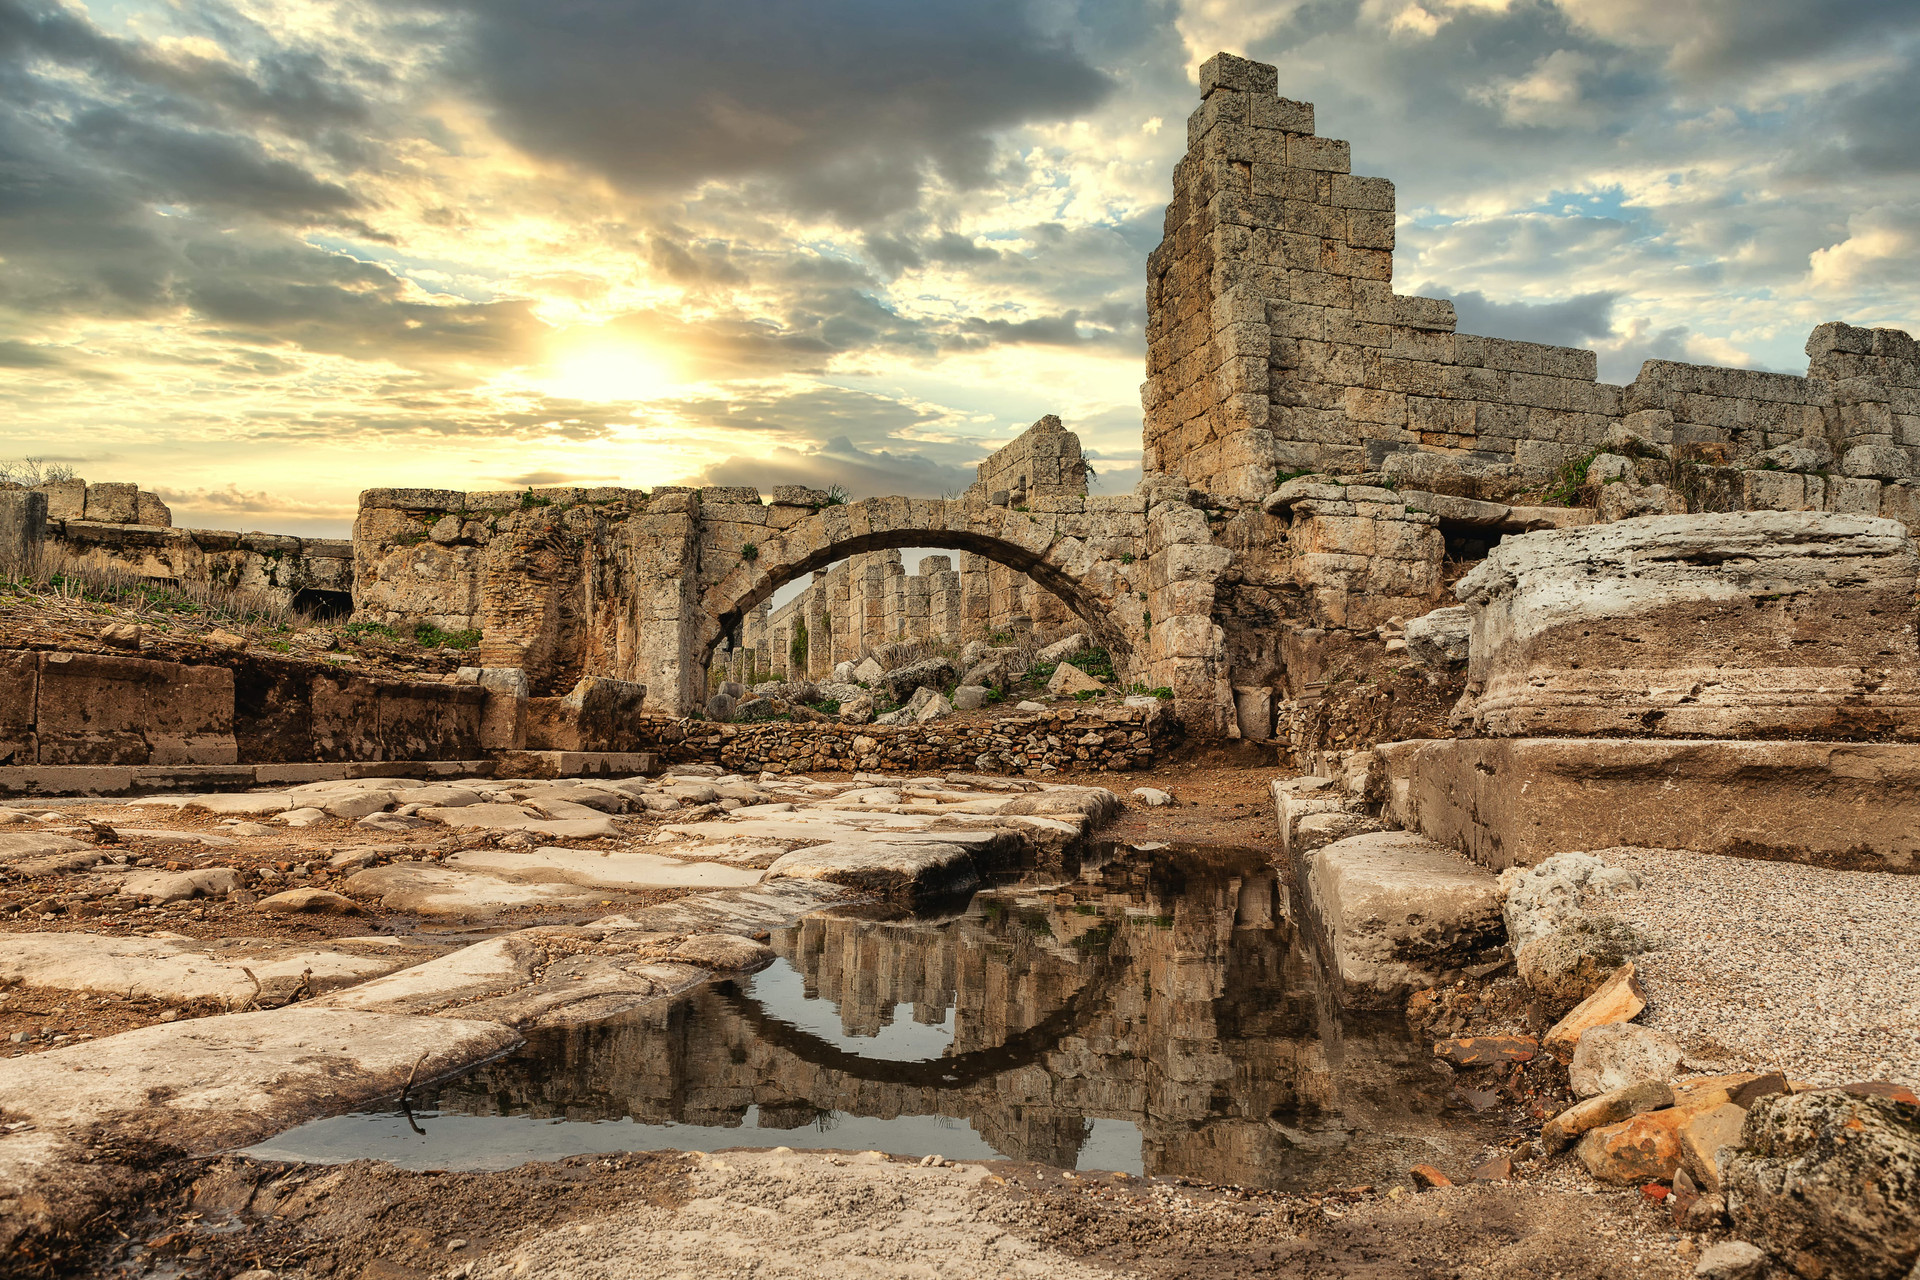 Khám phá những di tích cổ đại kỳ lạ chỉ có ở Thổ Nhĩ Kỳ - 4